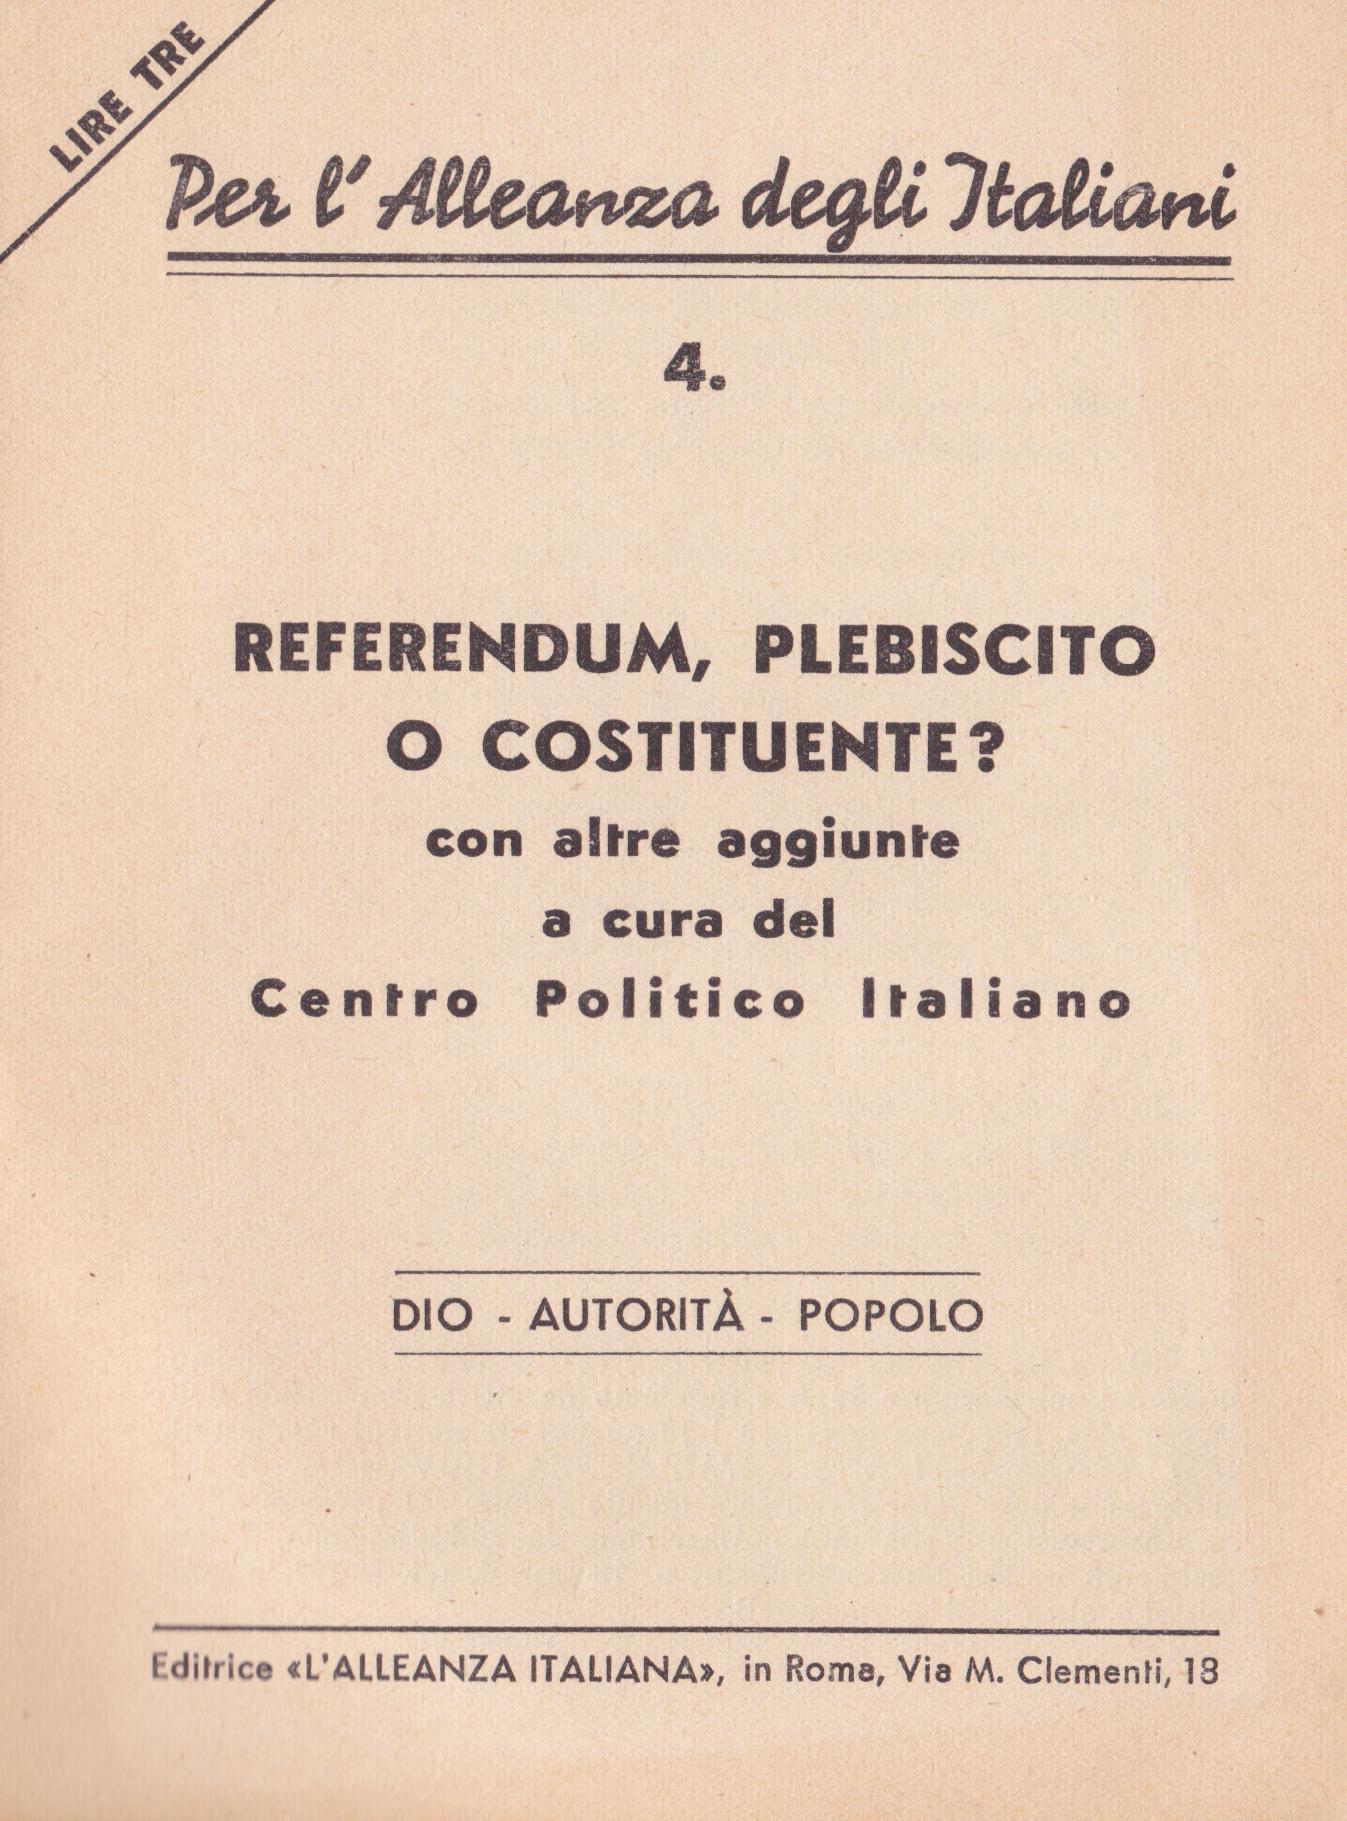 Referendum plebiscito costituente